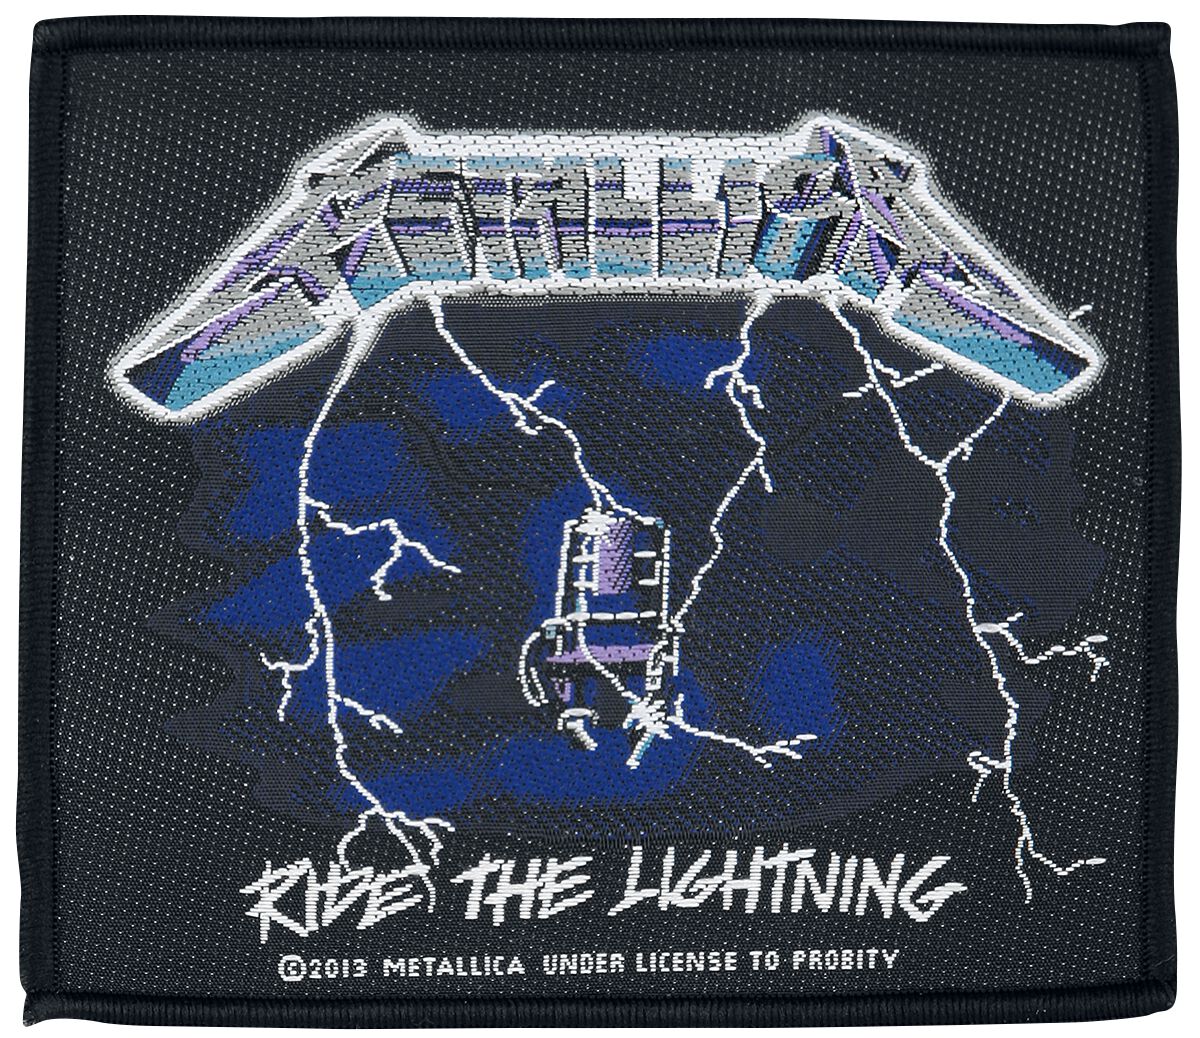 Metallica Patch - Ride The Lightning - schwarz/blau/weiß  - Lizenziertes Merchandise! von metallica